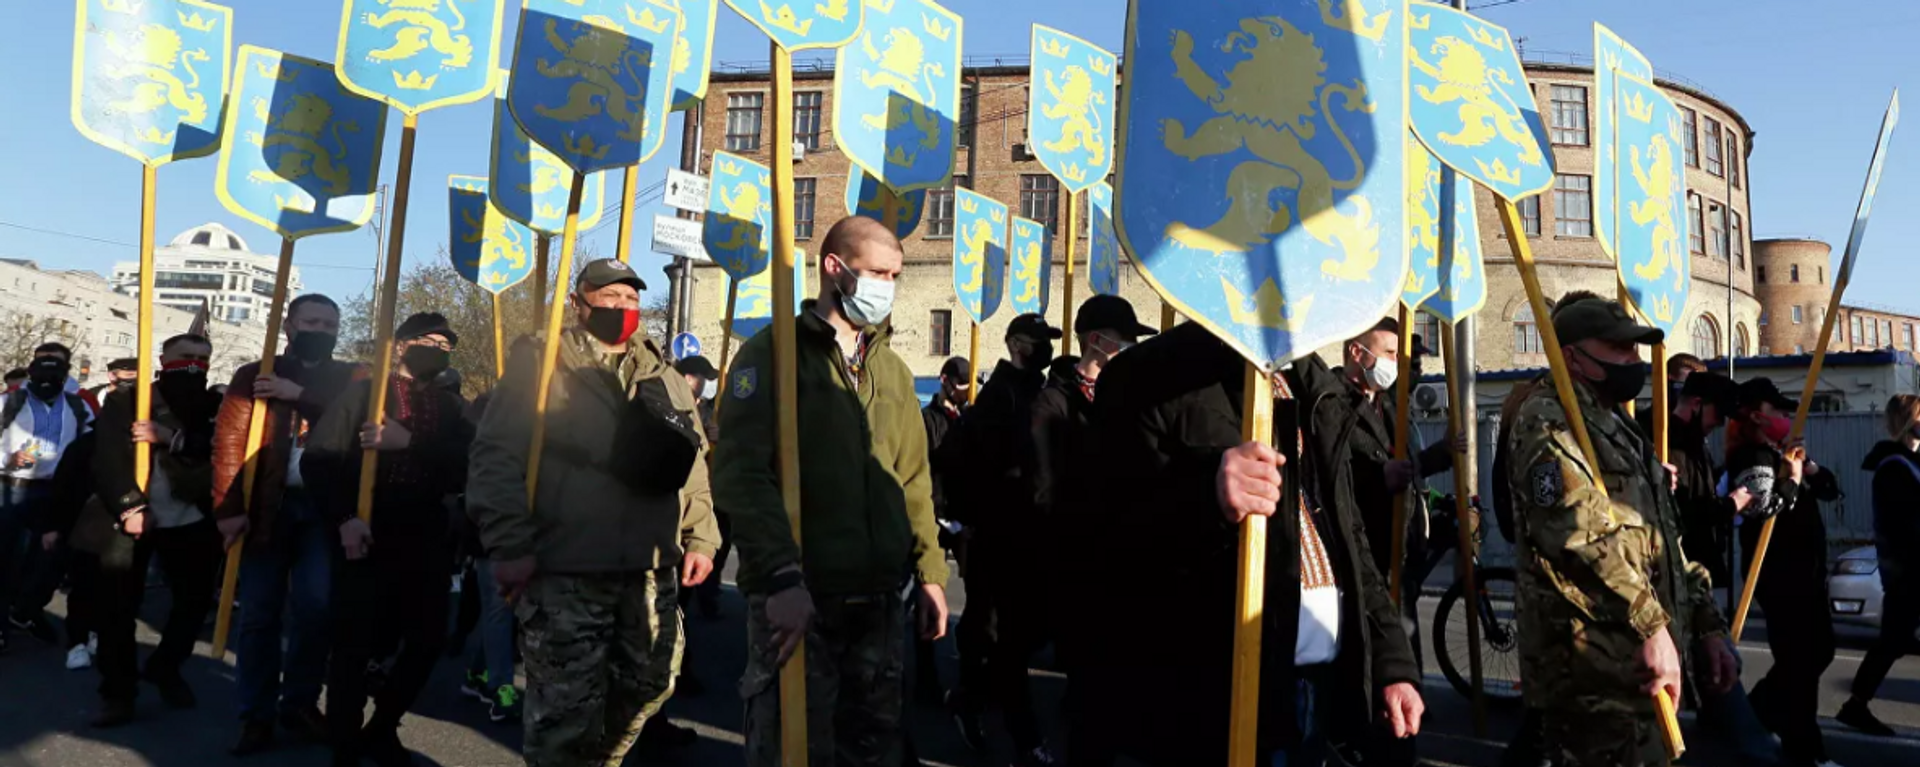 Marcha en honor a la fundación de la División Galizien de las Waffen-SS en Kiev (Ucrania), el 28 de abril del 2019 - Sputnik Mundo, 1920, 01.05.2021